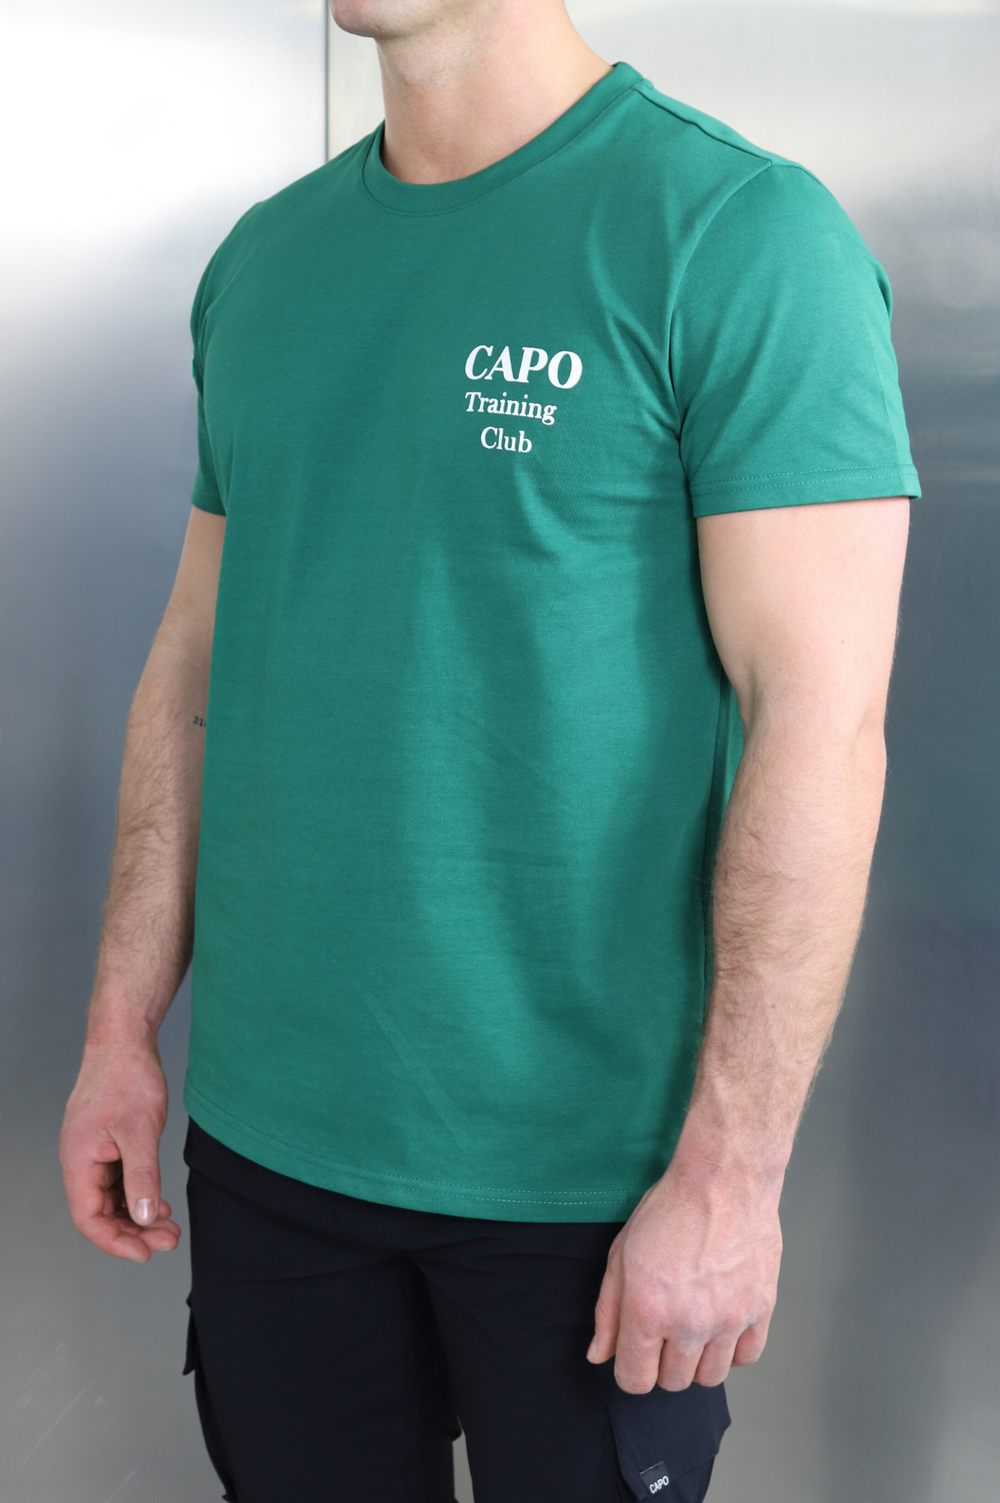 Capo TRAINING Club Print T-Shirt - Green